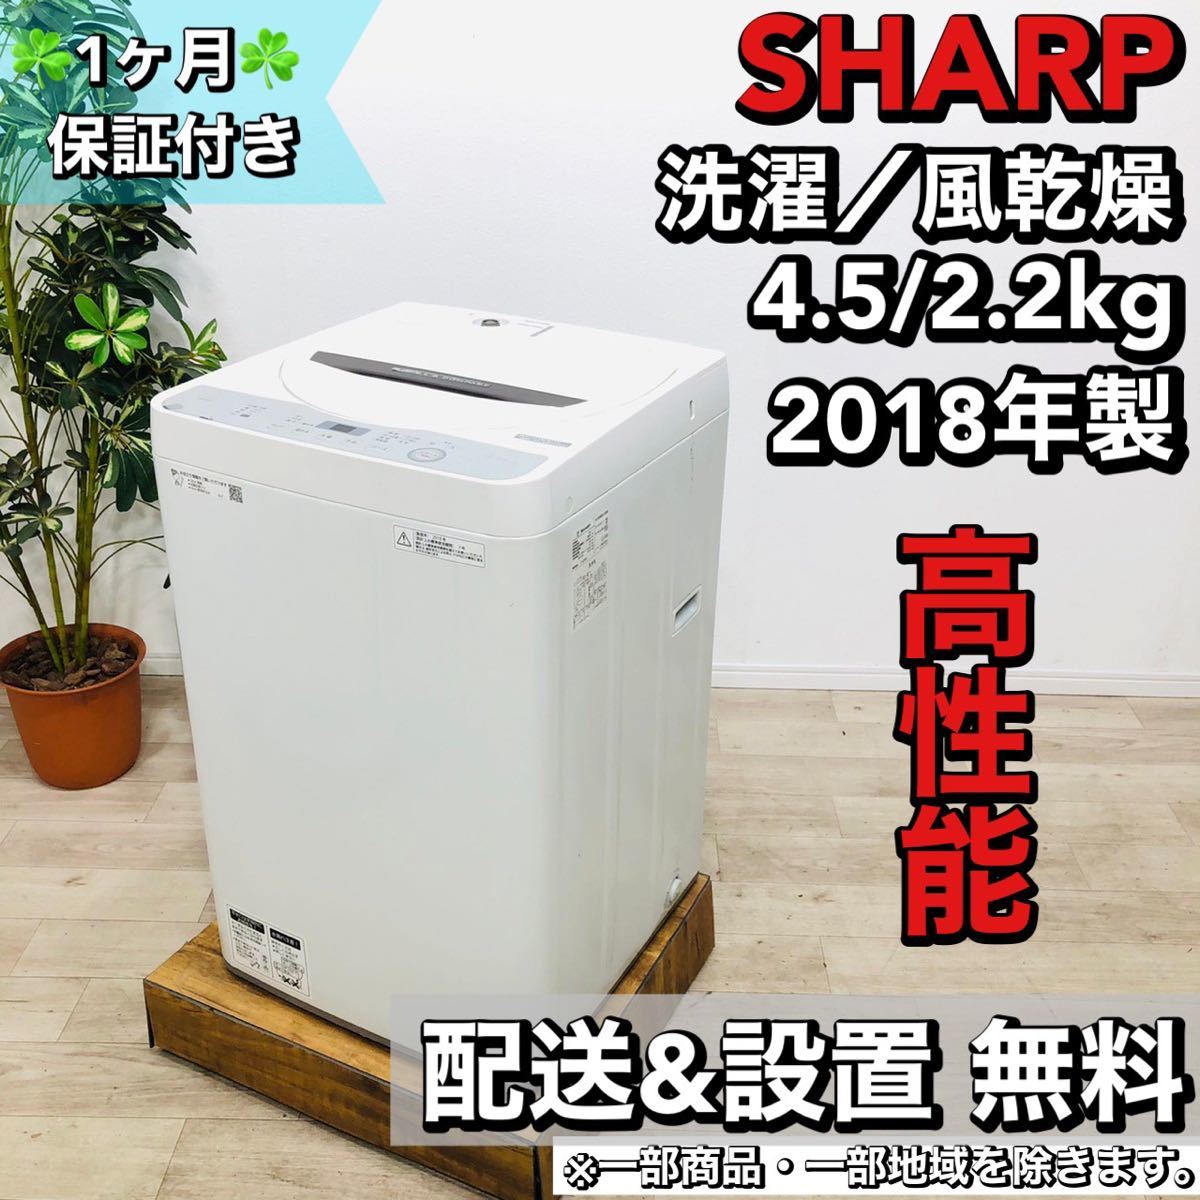 魅力的な SHARP a1428 洗濯機 4.5kg 2018年製 2,5- 5kg未満